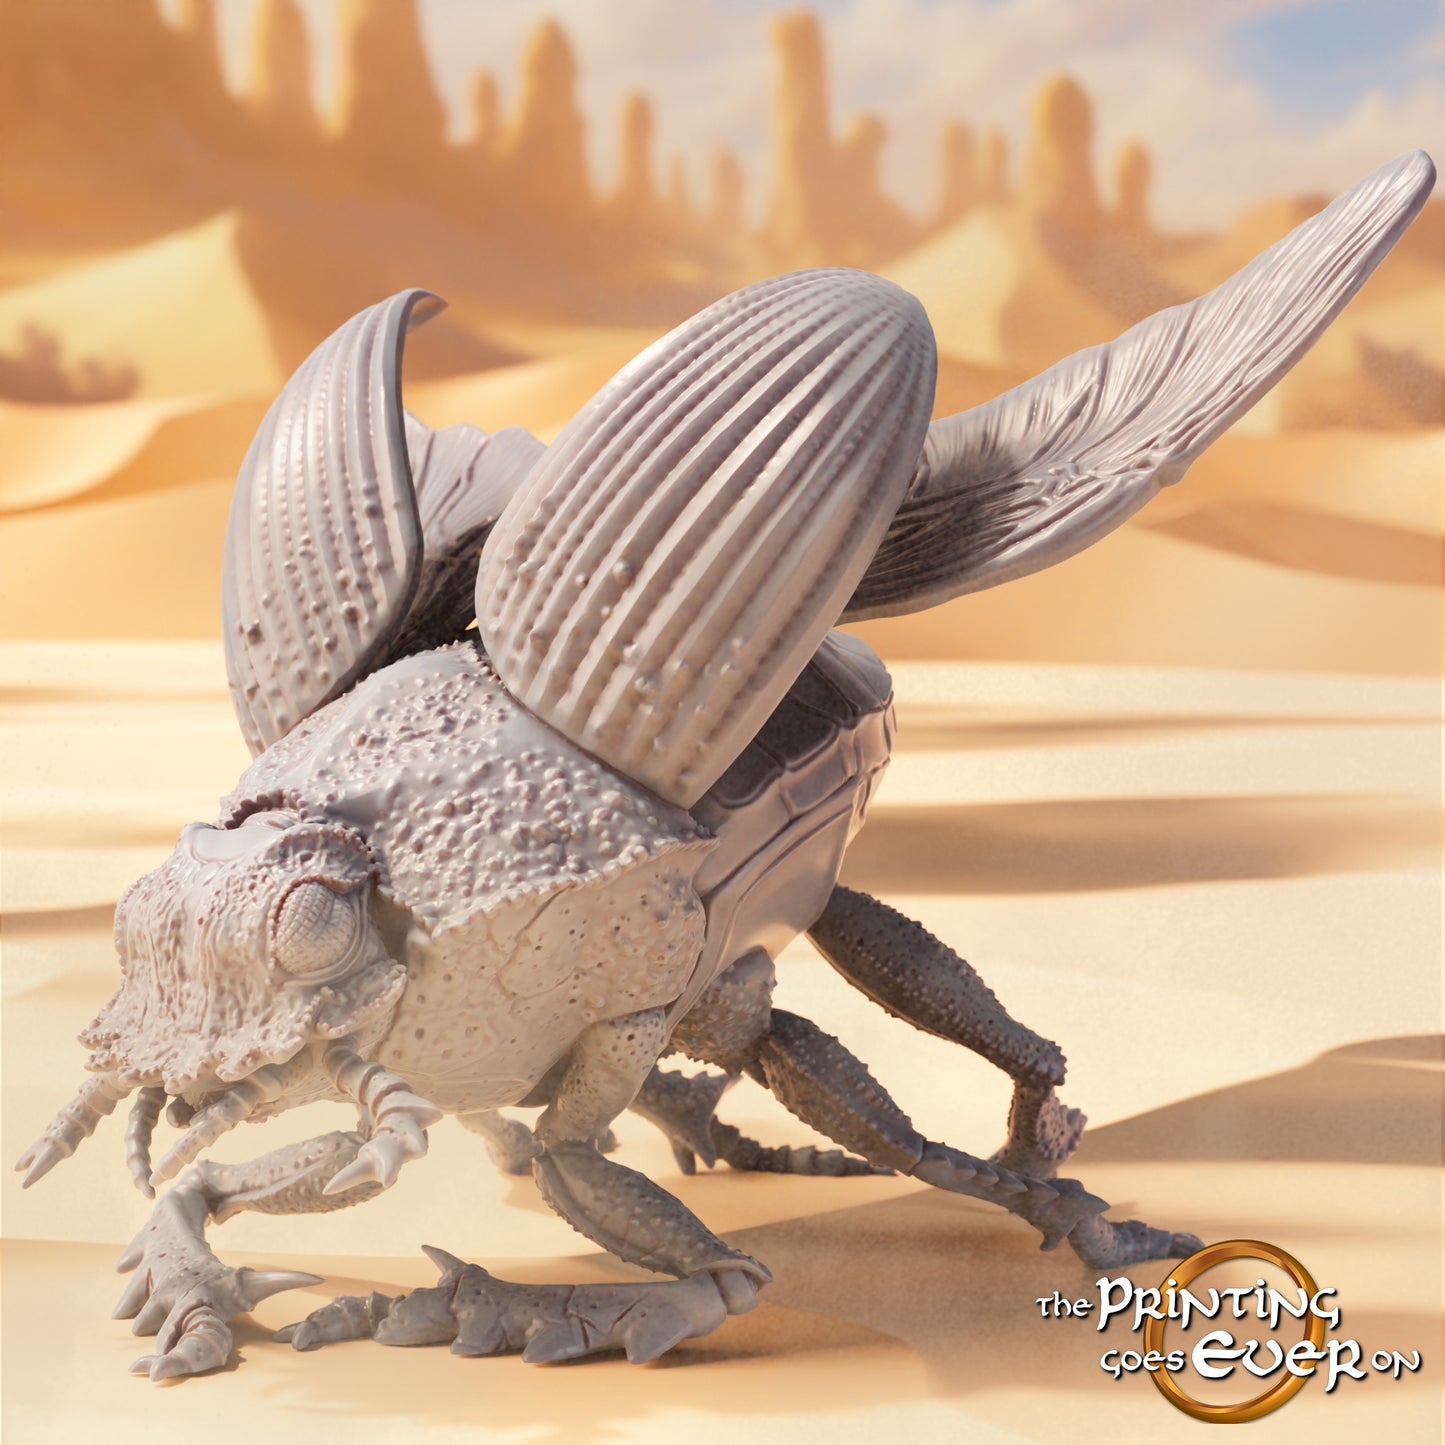 Produktfoto Tabletop 28mm The Printing Goes Ever On (TPGEO)  0: Wüsten Skarabäus: Fliegendes Riesen Insekt - Tiere und Monster aus der Wüste